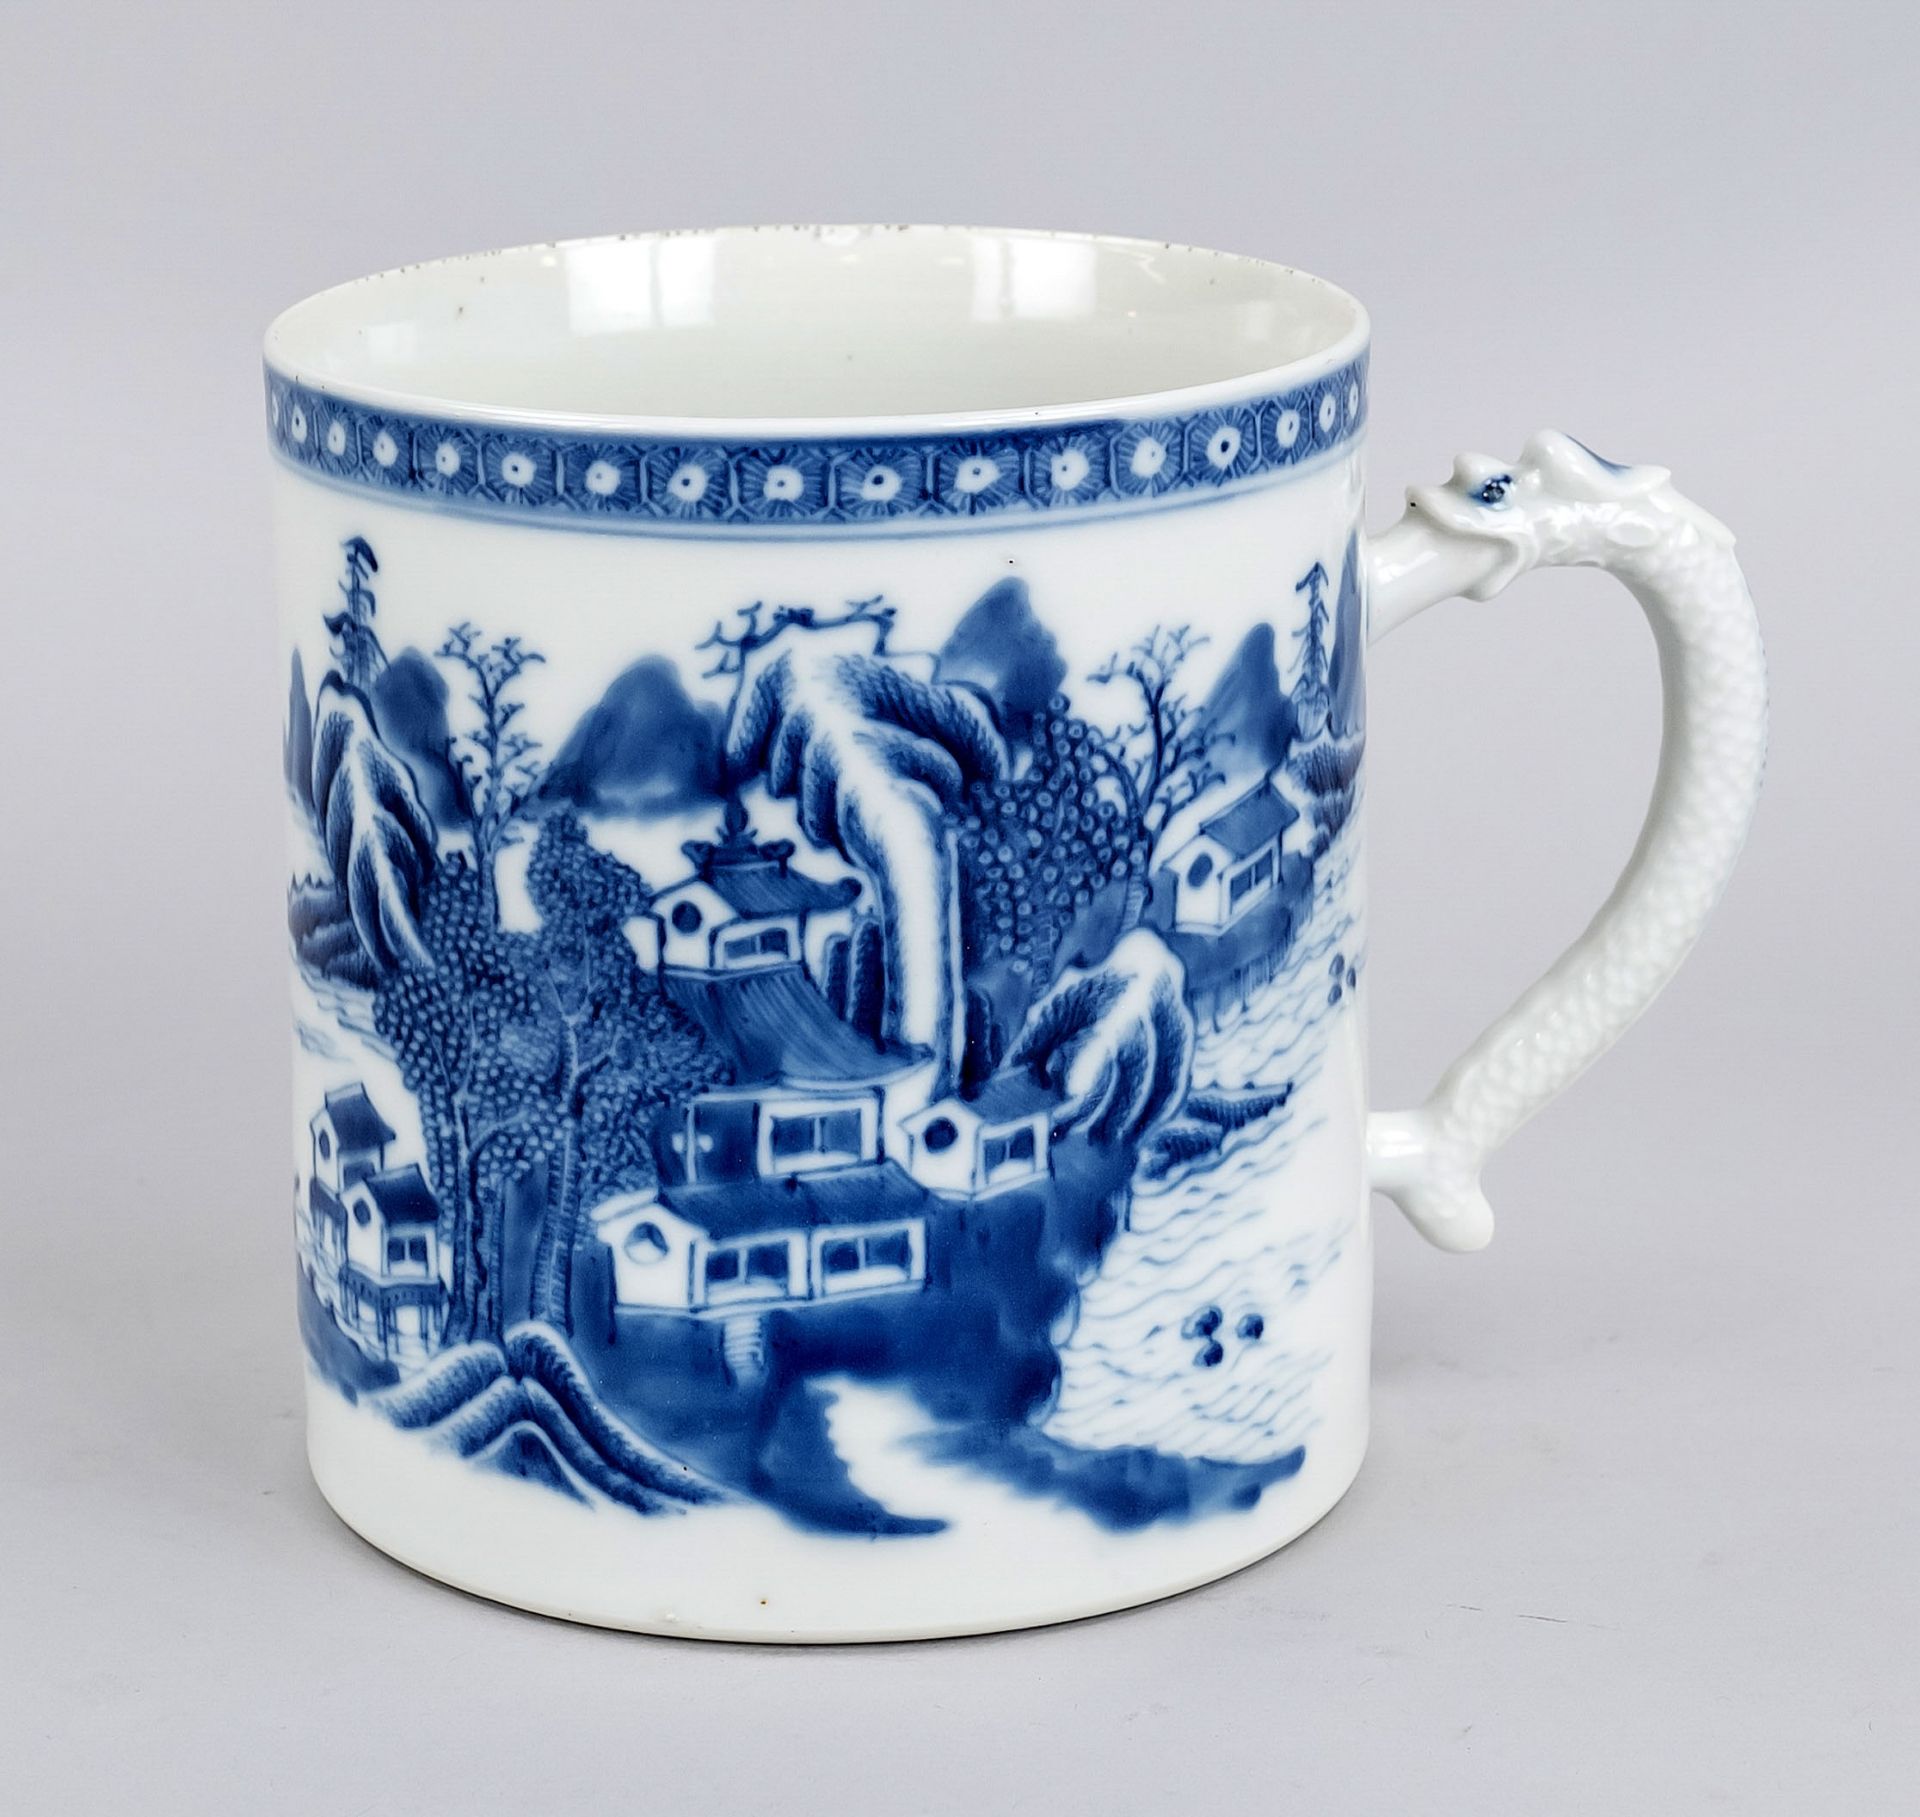 Large porcelain beer stein MUG, China, Qing dynasty(1644-1912), c. 1800, export porcelain in